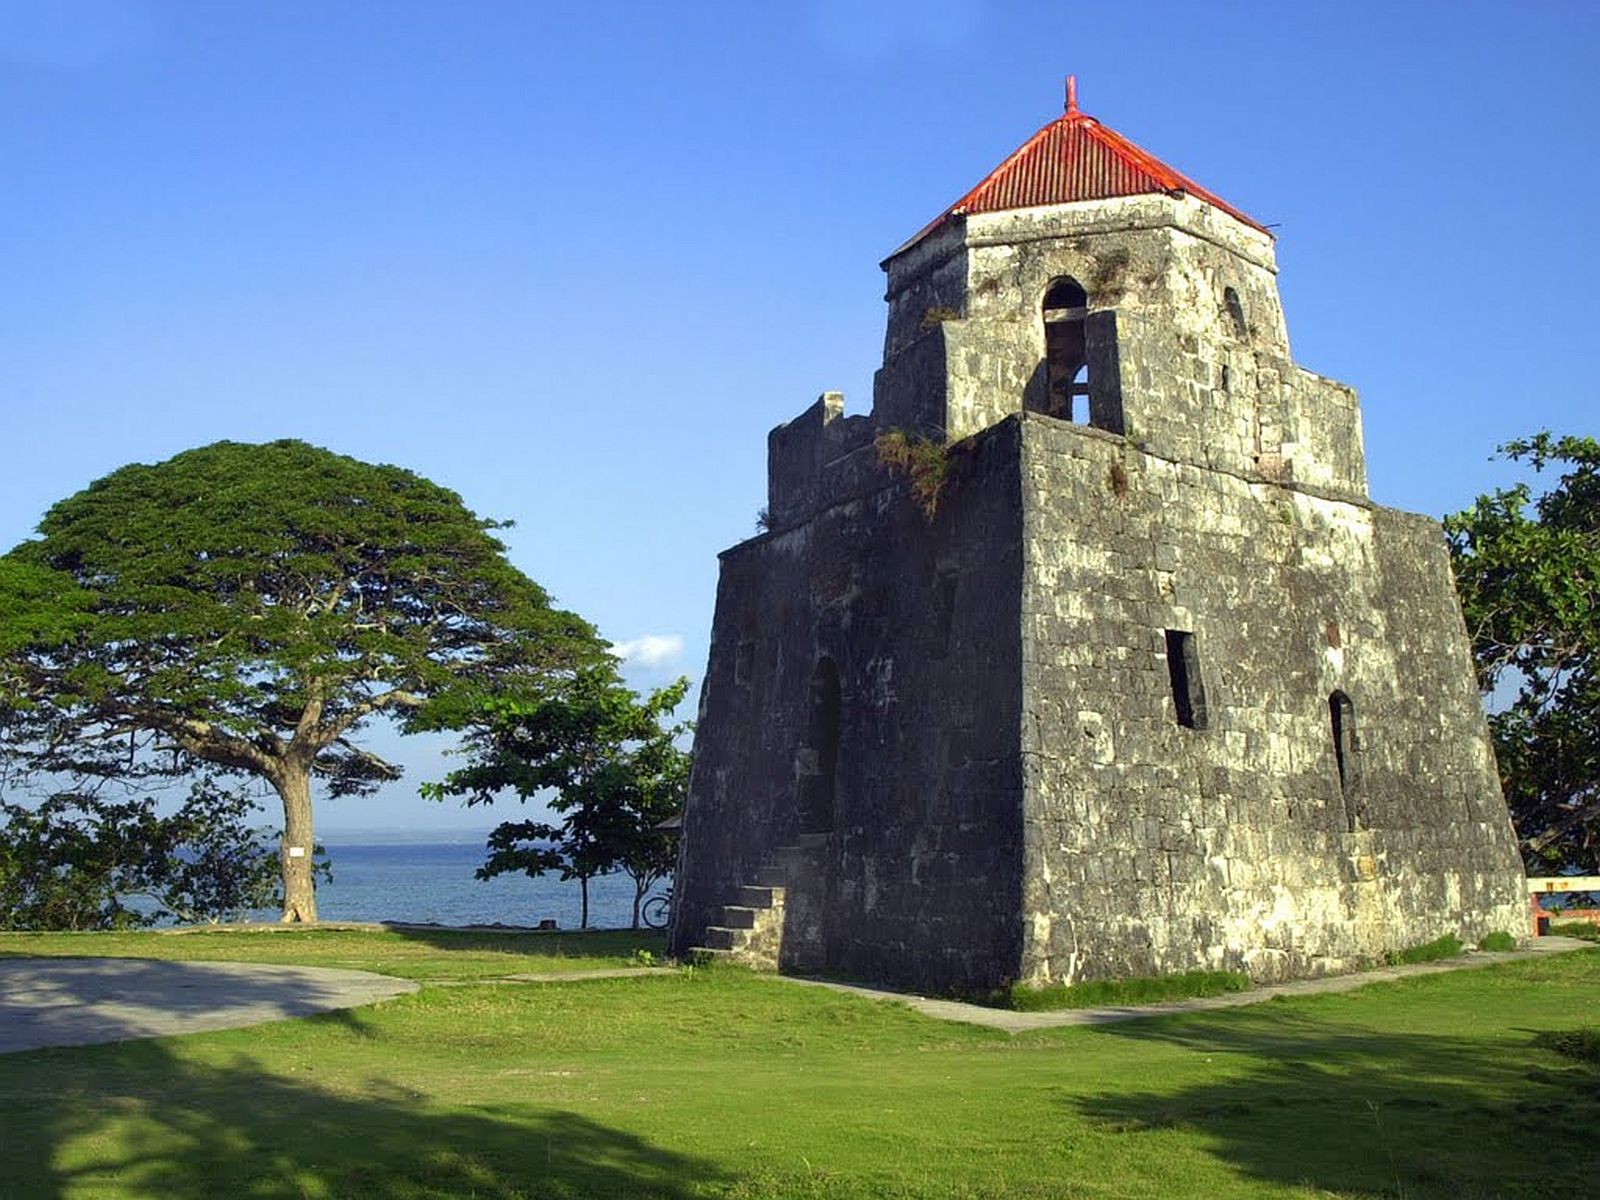 PHILIPPINEN REISEN - ORTE - BOHOL - Touristische Ortsbeschreibung für Maribojac